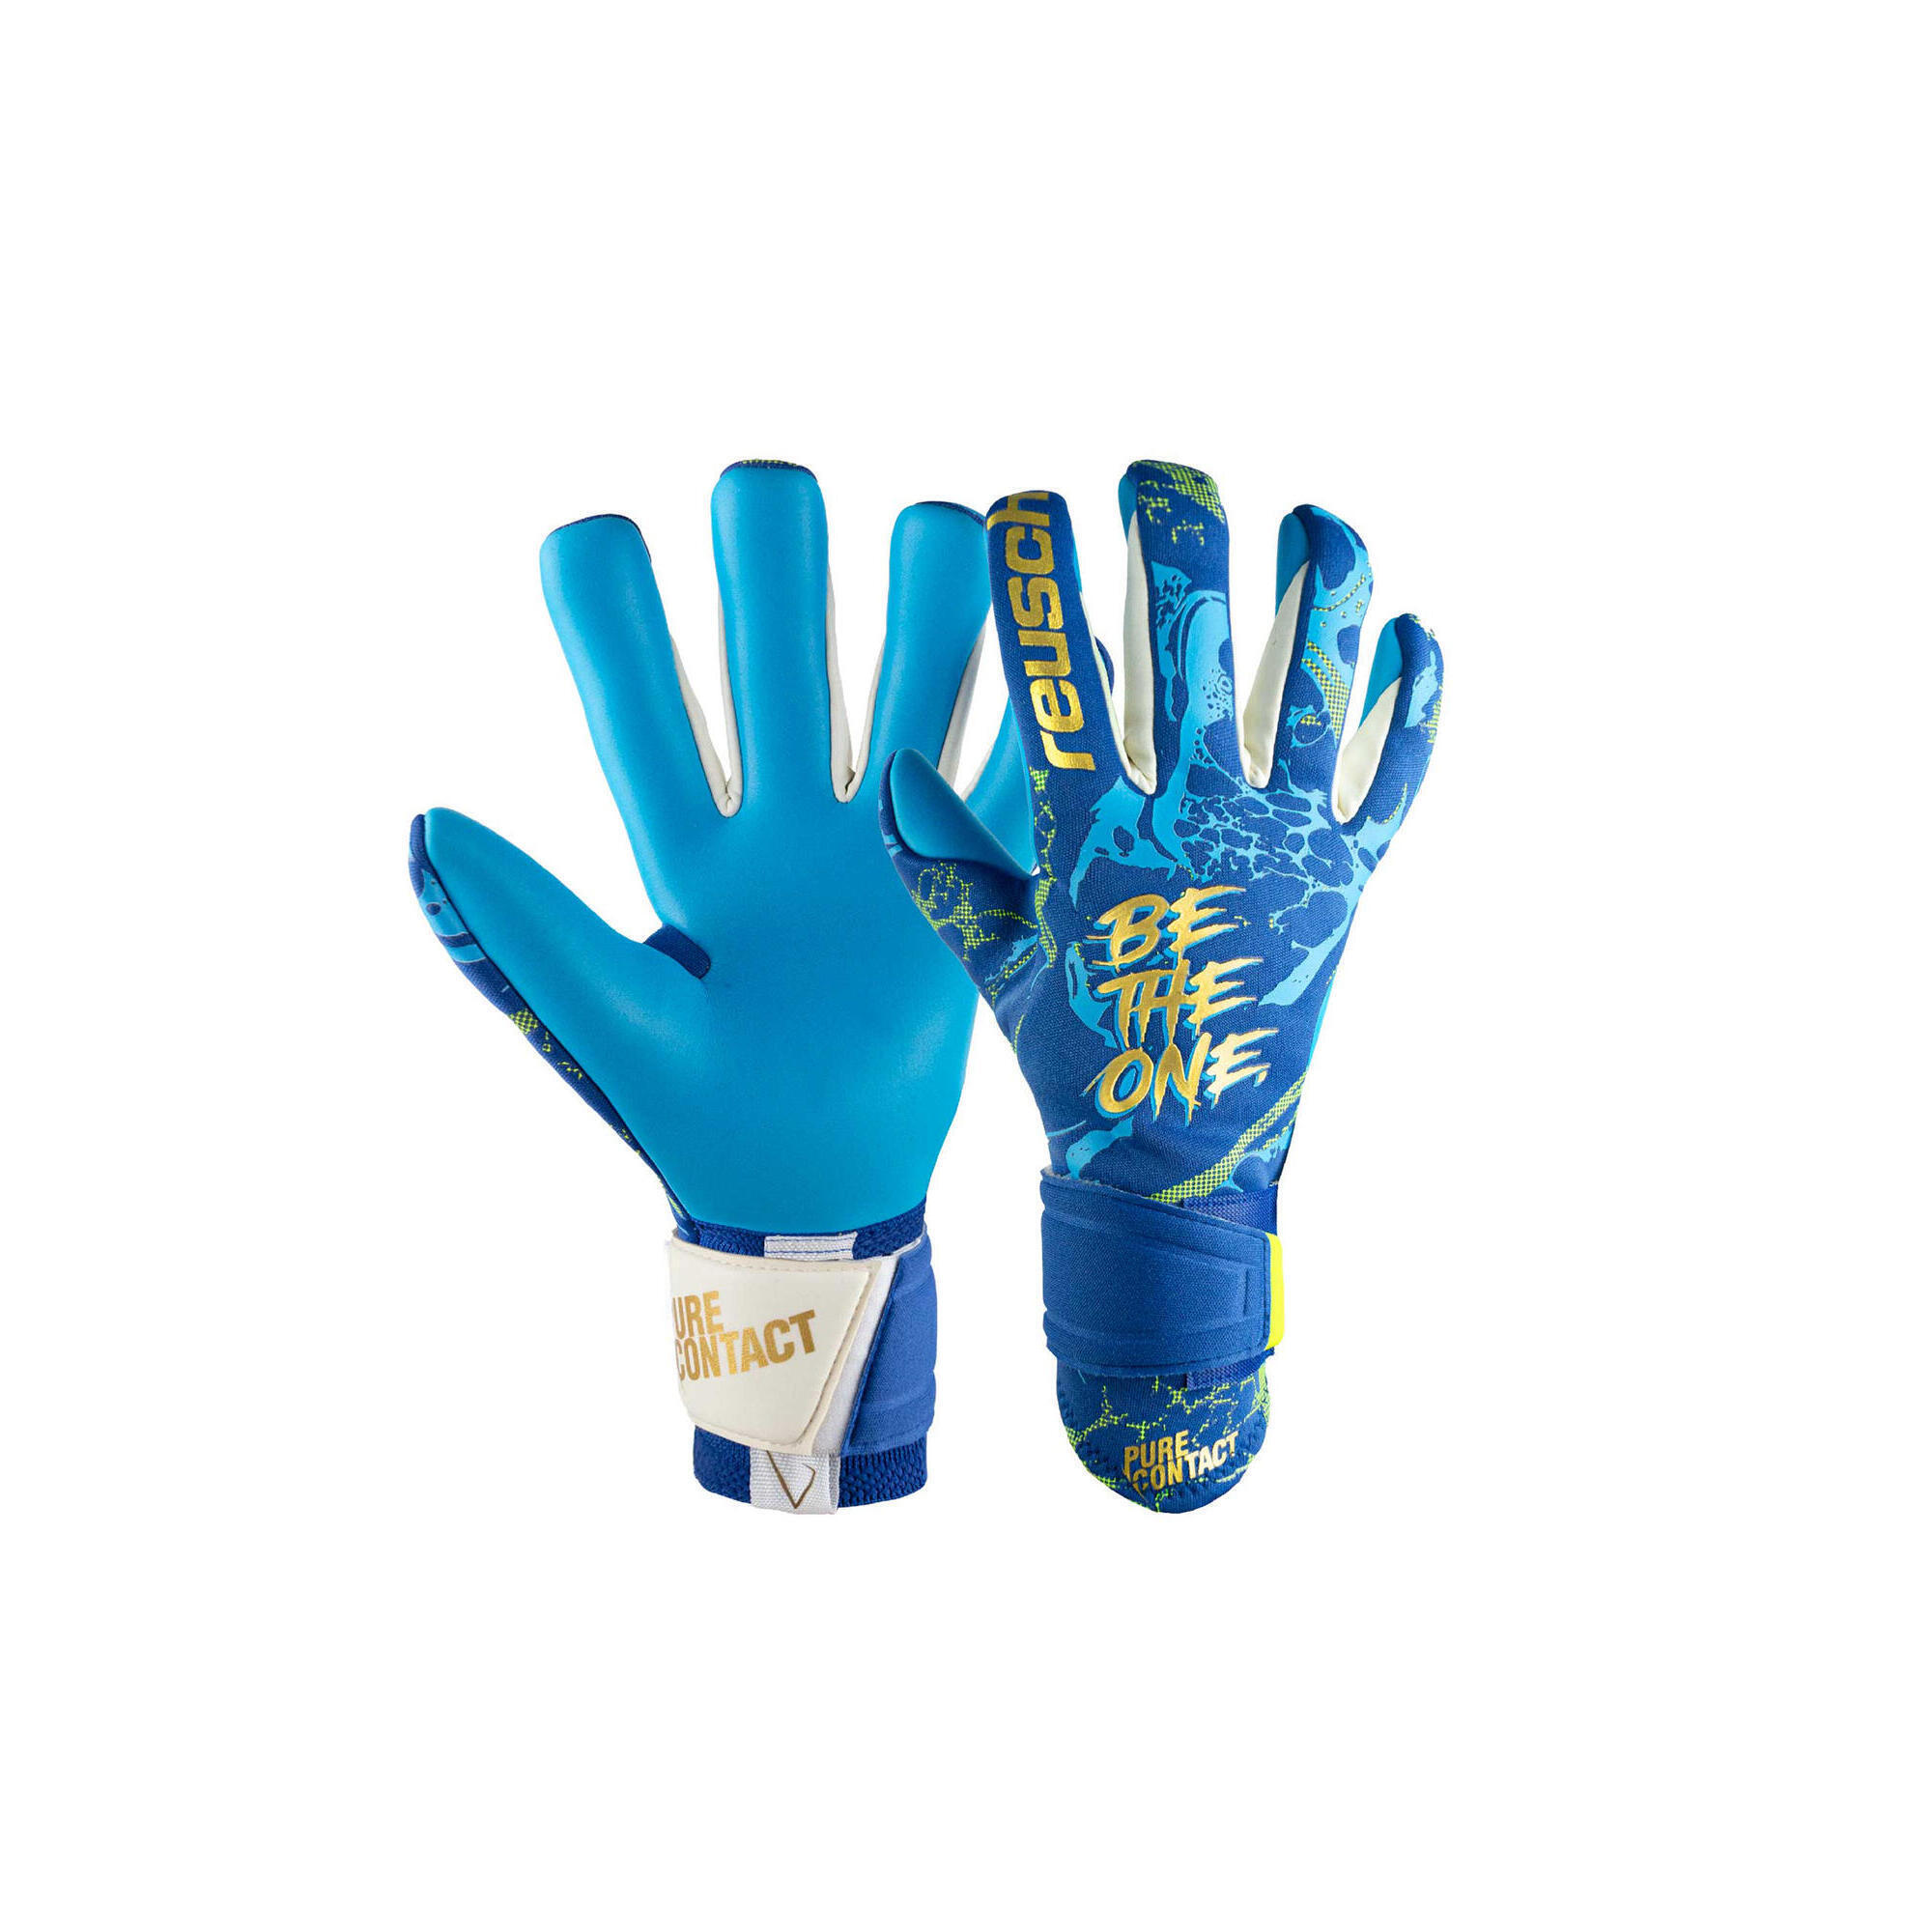 REUSCH Reusch Pure Contact Aqua Goalkeeper Gloves